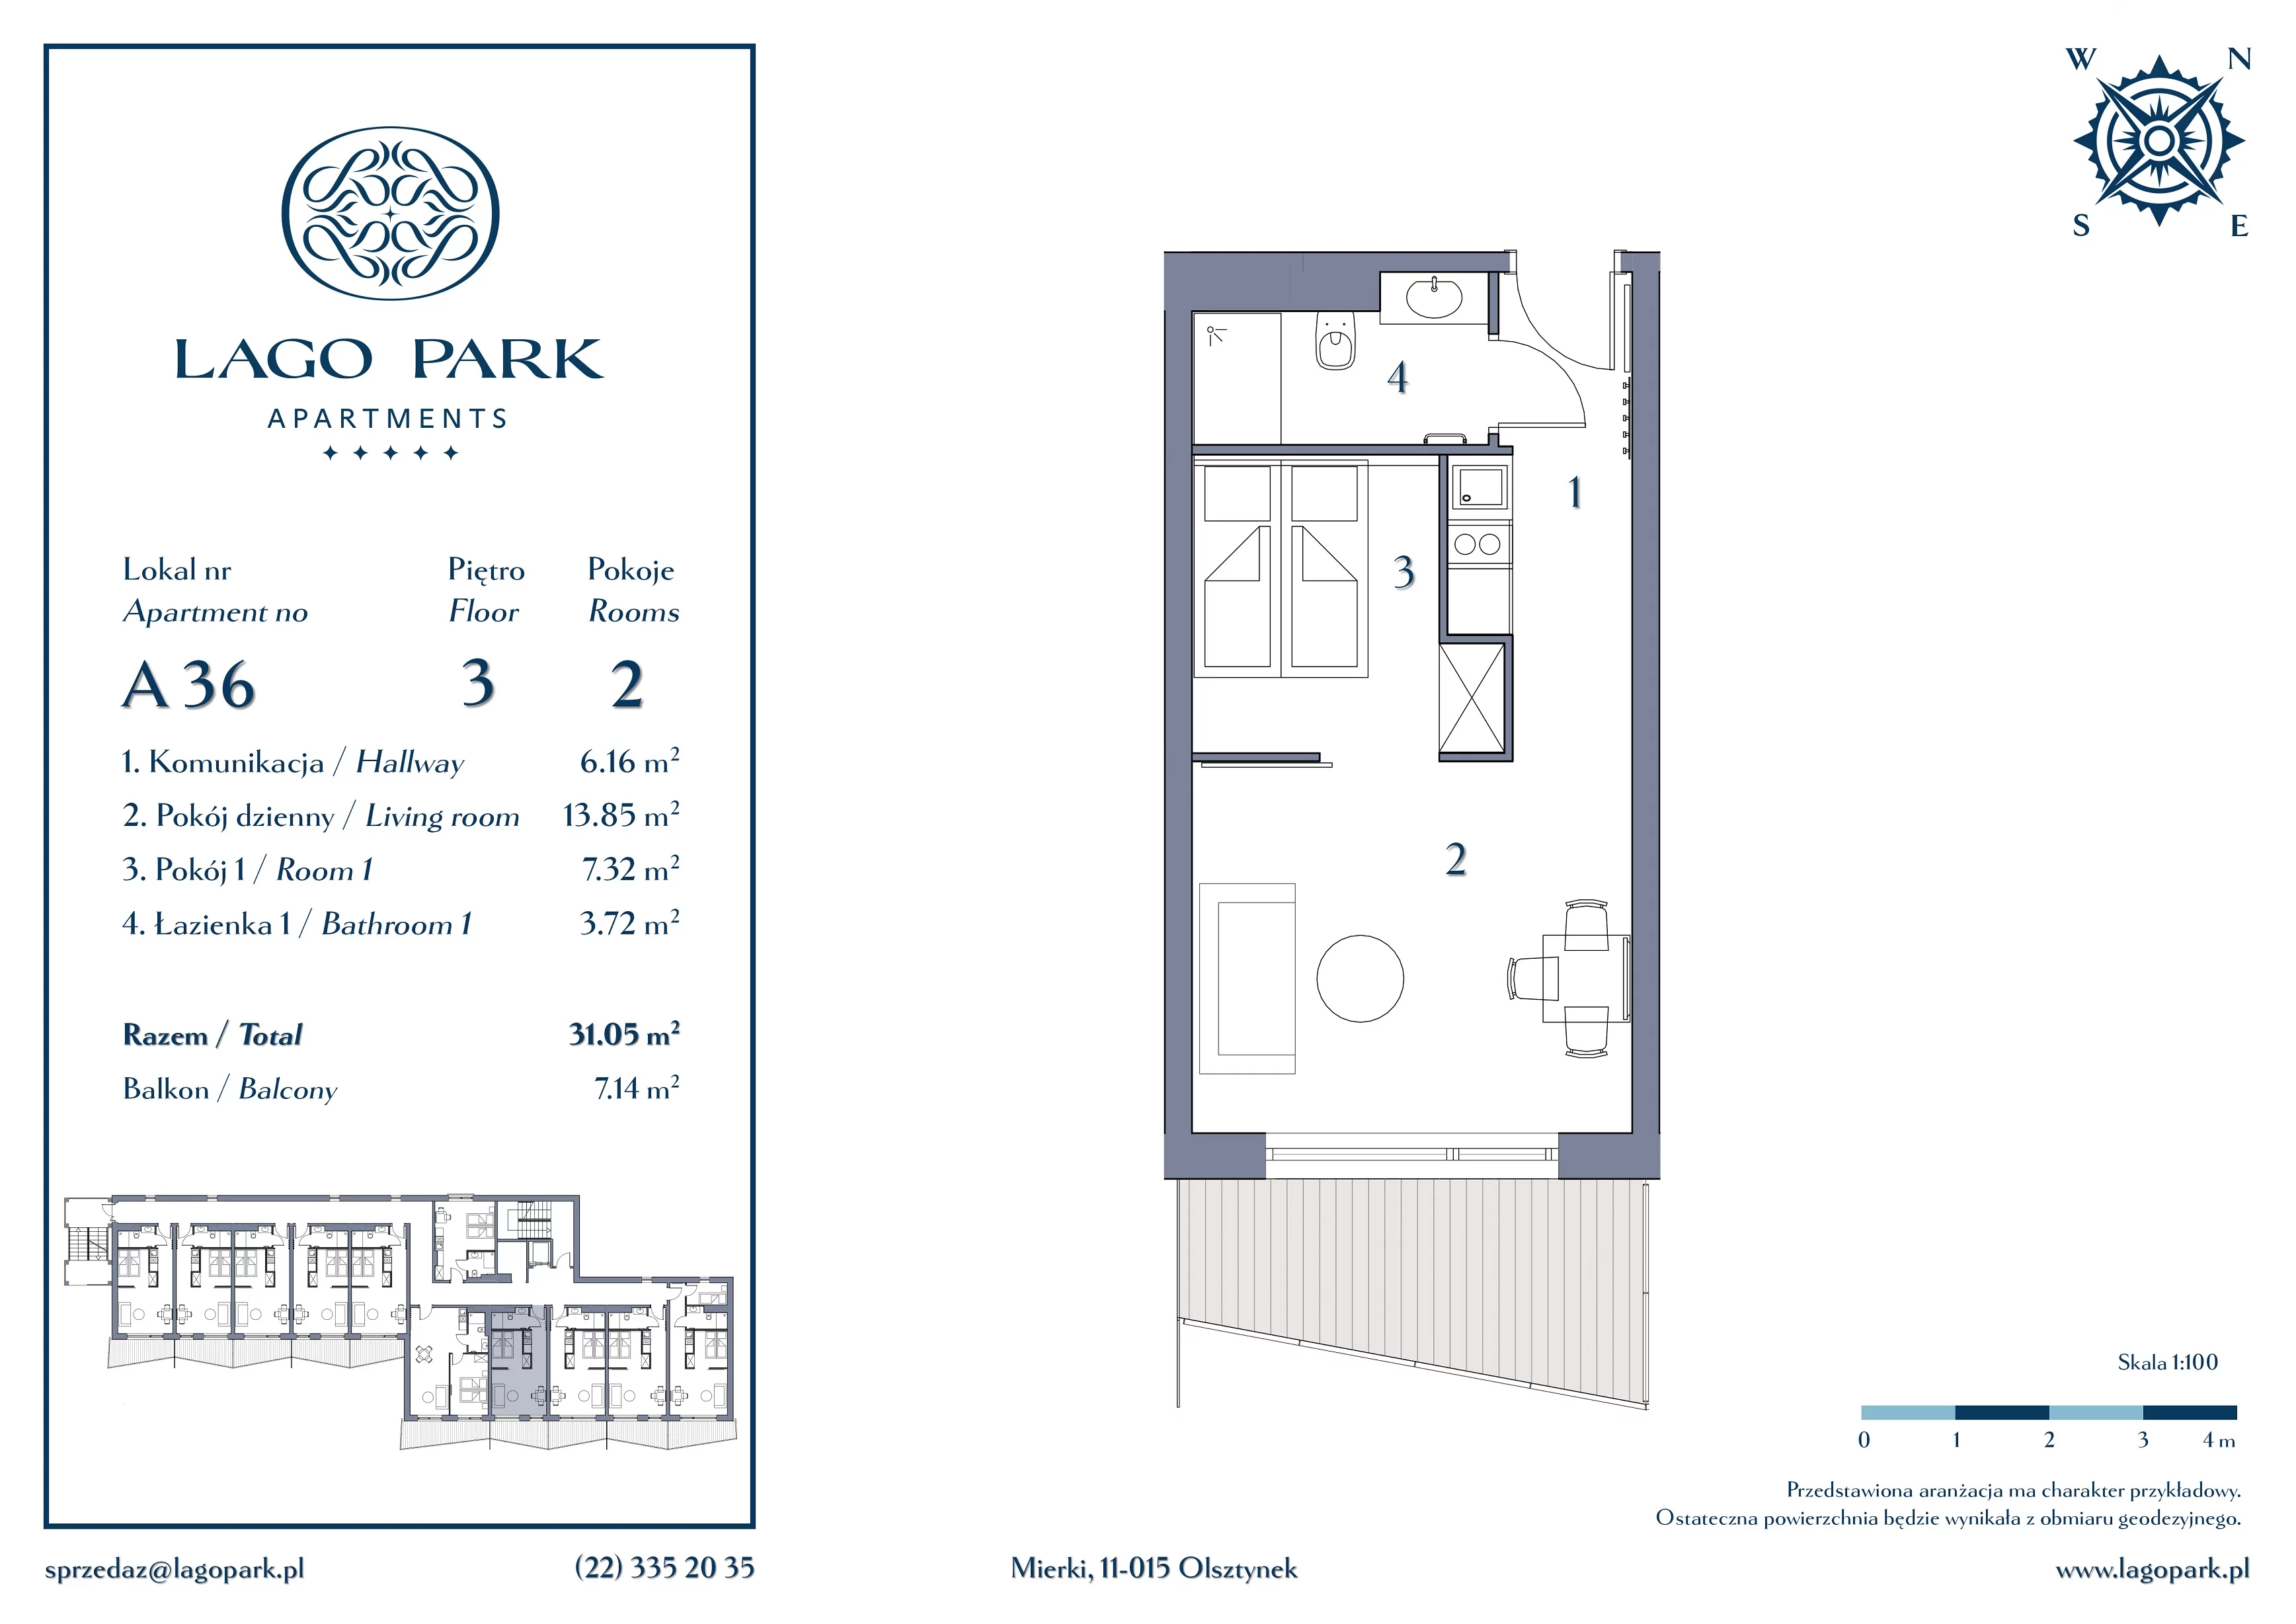 Apartament inwestycyjny 31,05 m², piętro 3, oferta nr A36, Lago Park Apartments by Aries, Mierki, Kołatek 2